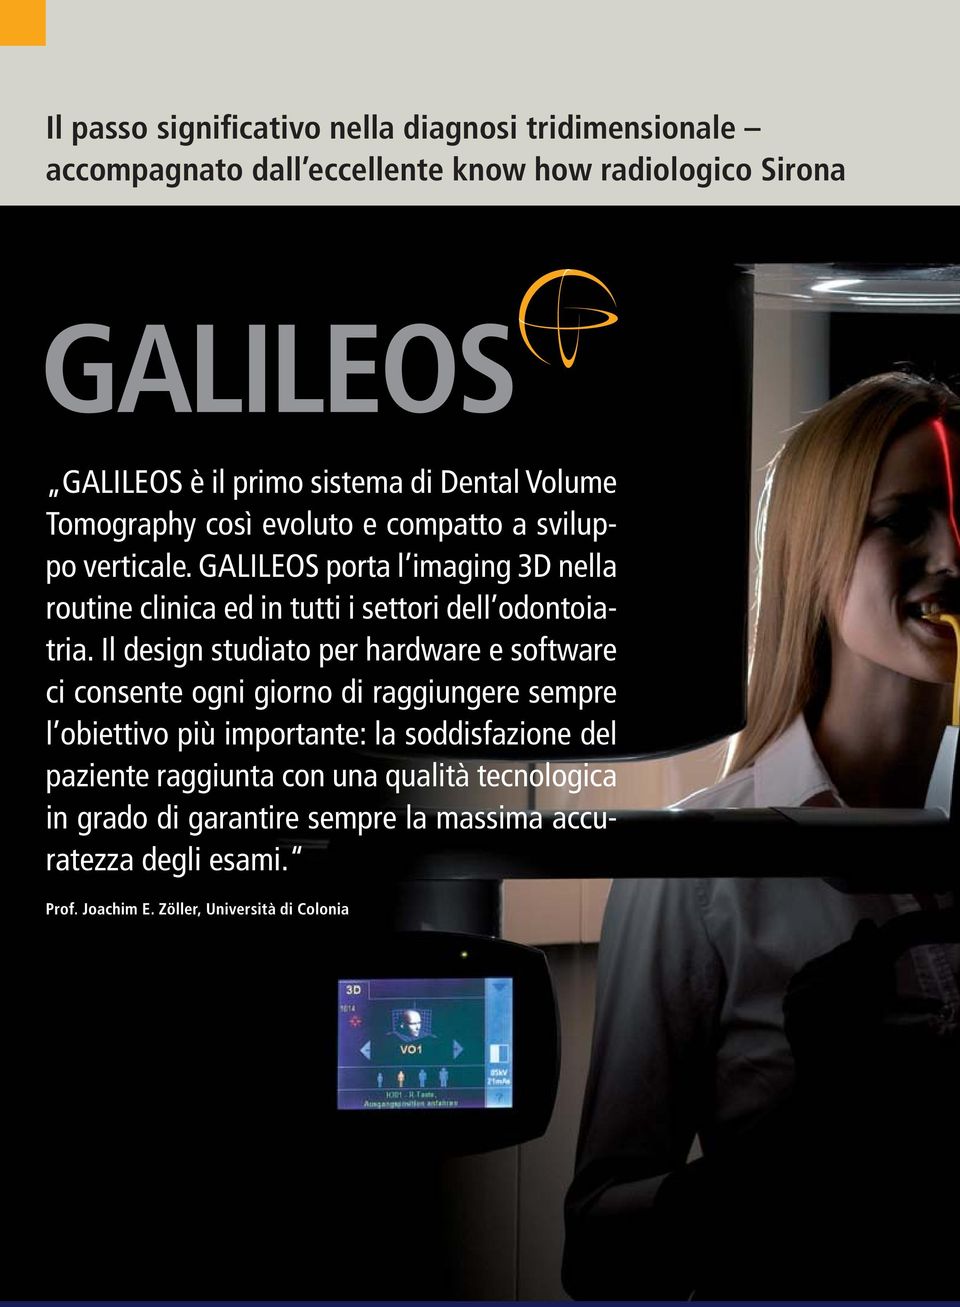 GALILEOS porta l imaging 3D nella routine clinica ed in tutti i settori dell odontoiatria.